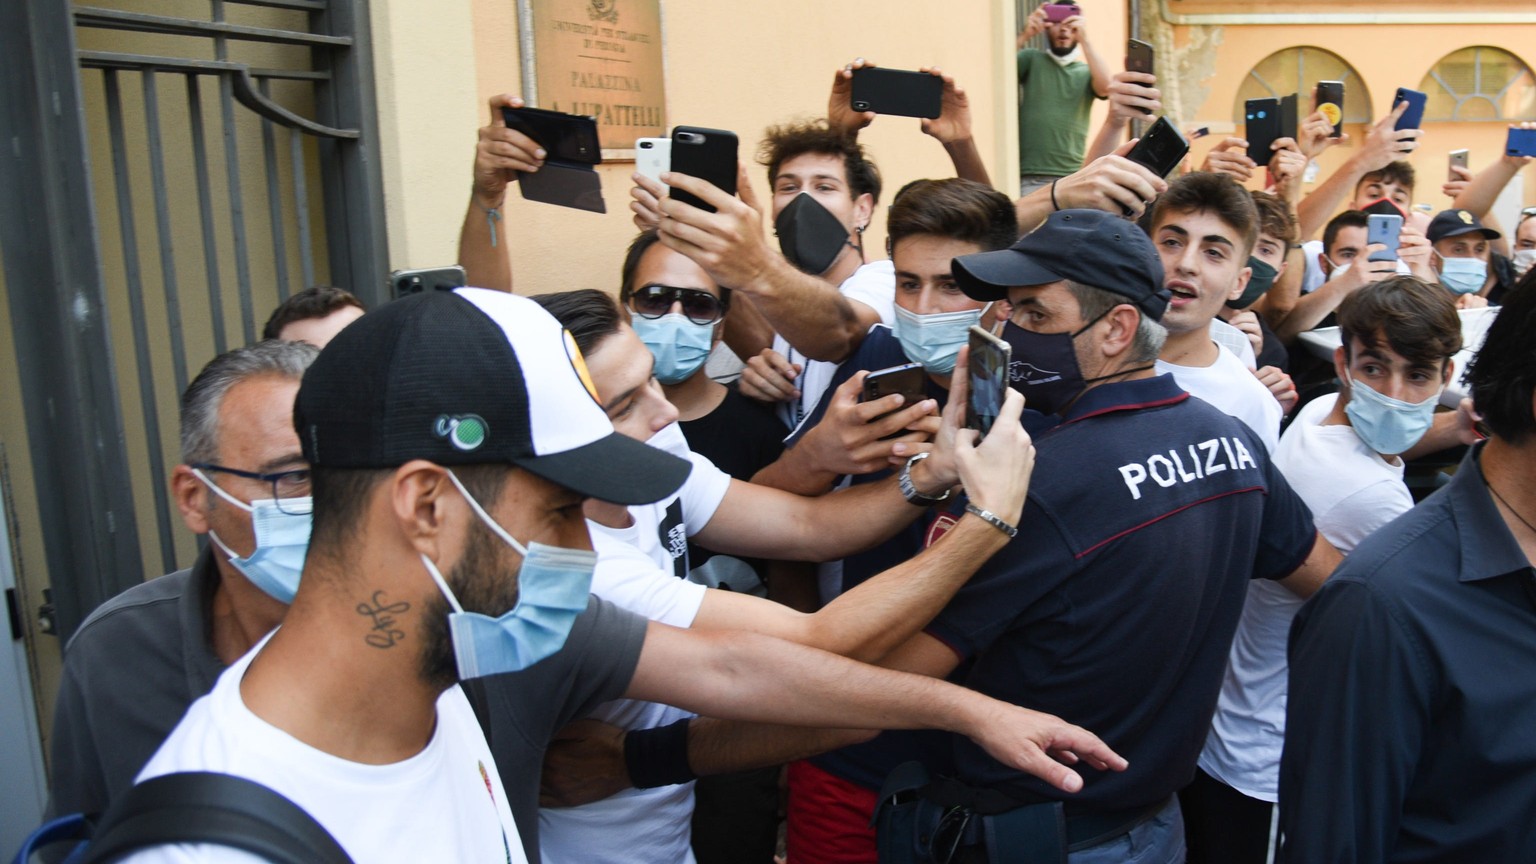 Begeisterte Tifosi: Luis Suarez beim Verlassen der Universität Perugia.